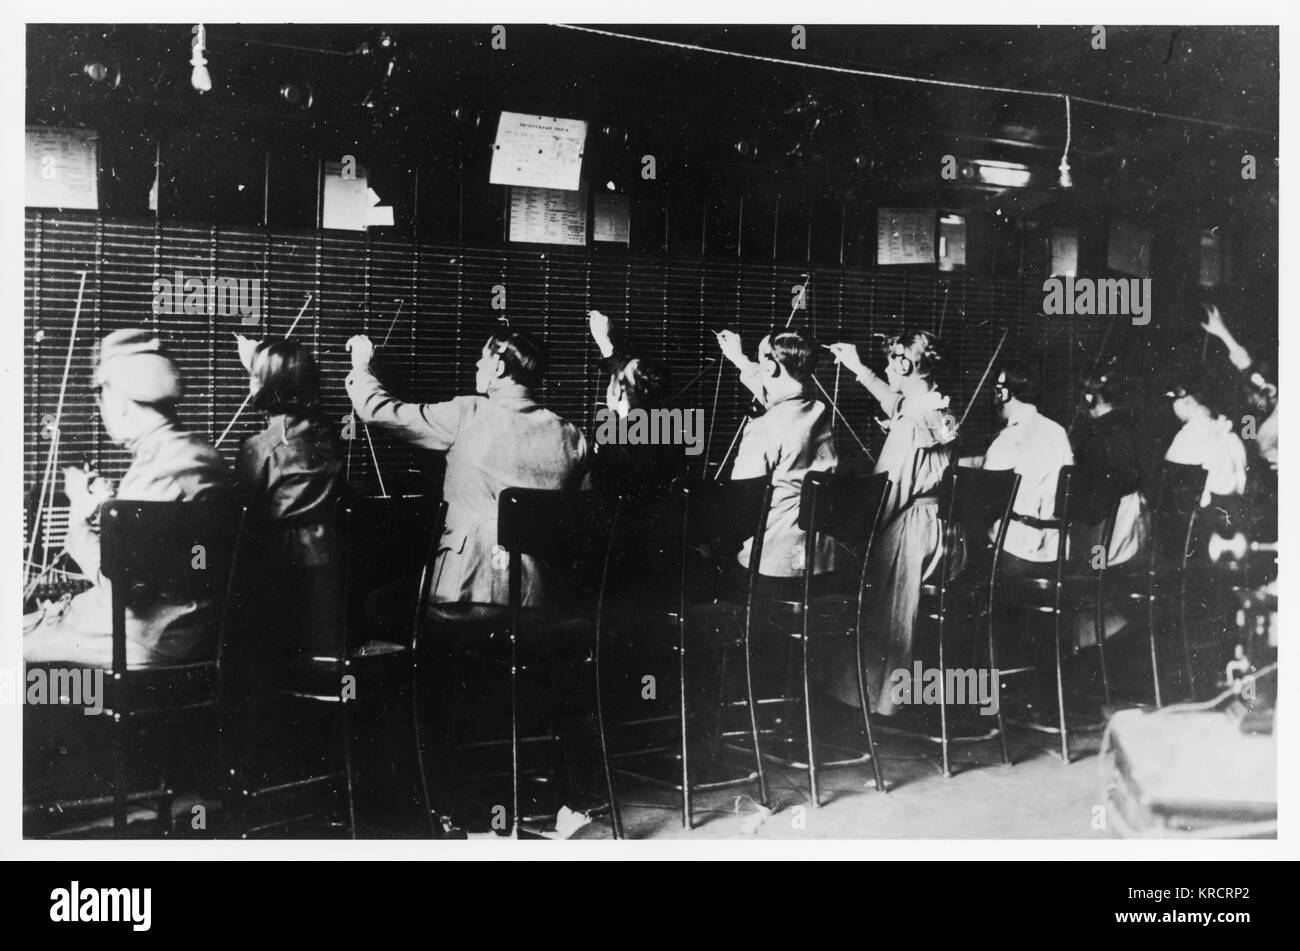 Russische Revolution - Telefon Exchange durch die revolutionären Truppen gefangengenommen. Datum: Oktober 1917 Stockfoto